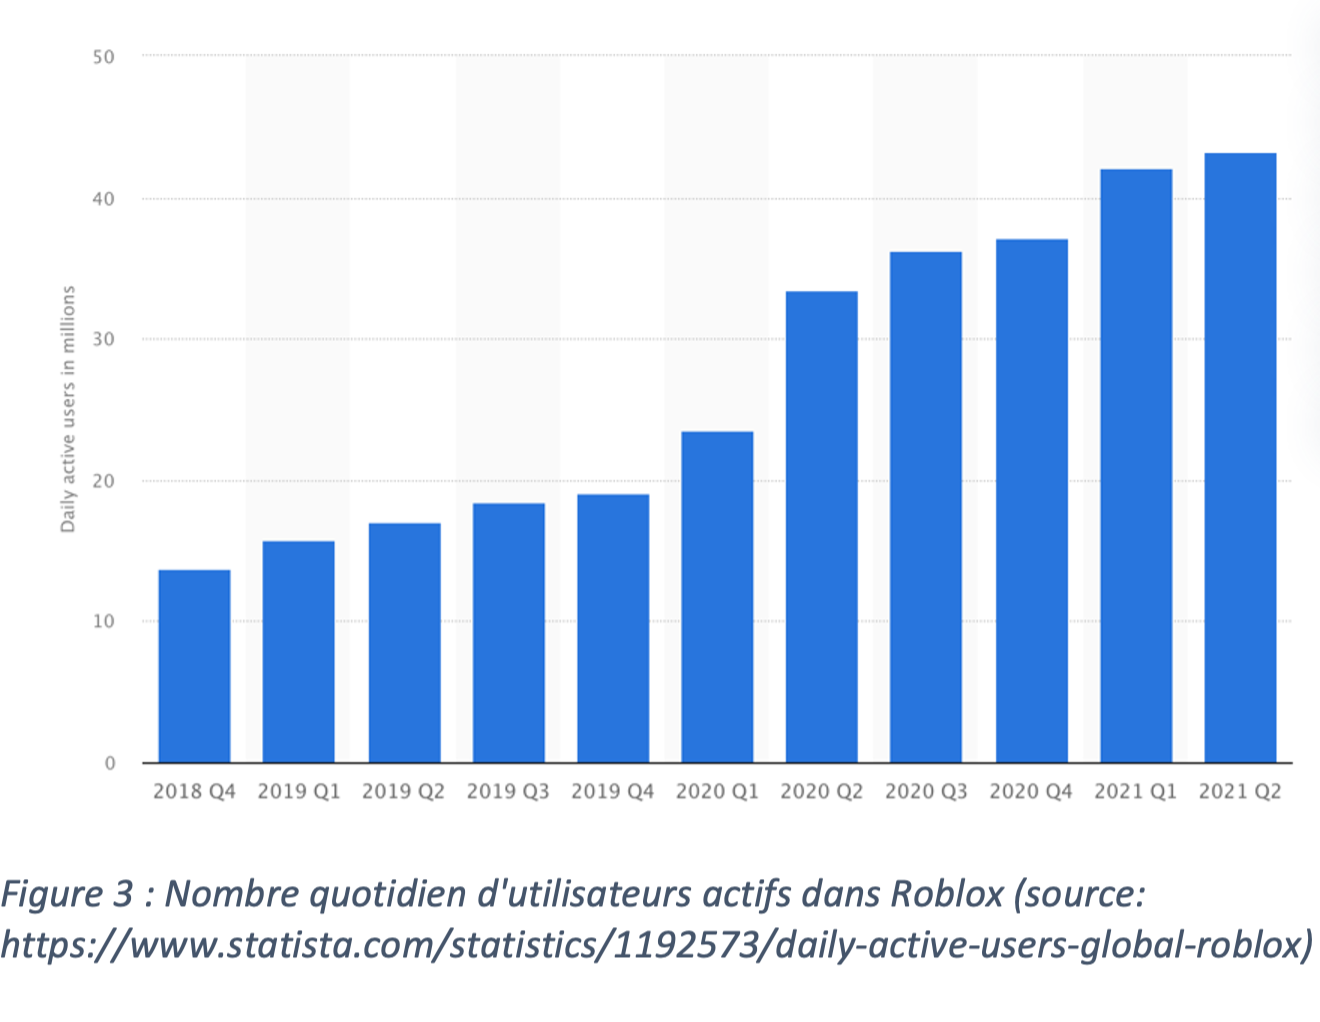 Nombre quotidien d'utilisateur actifs dans Roblox